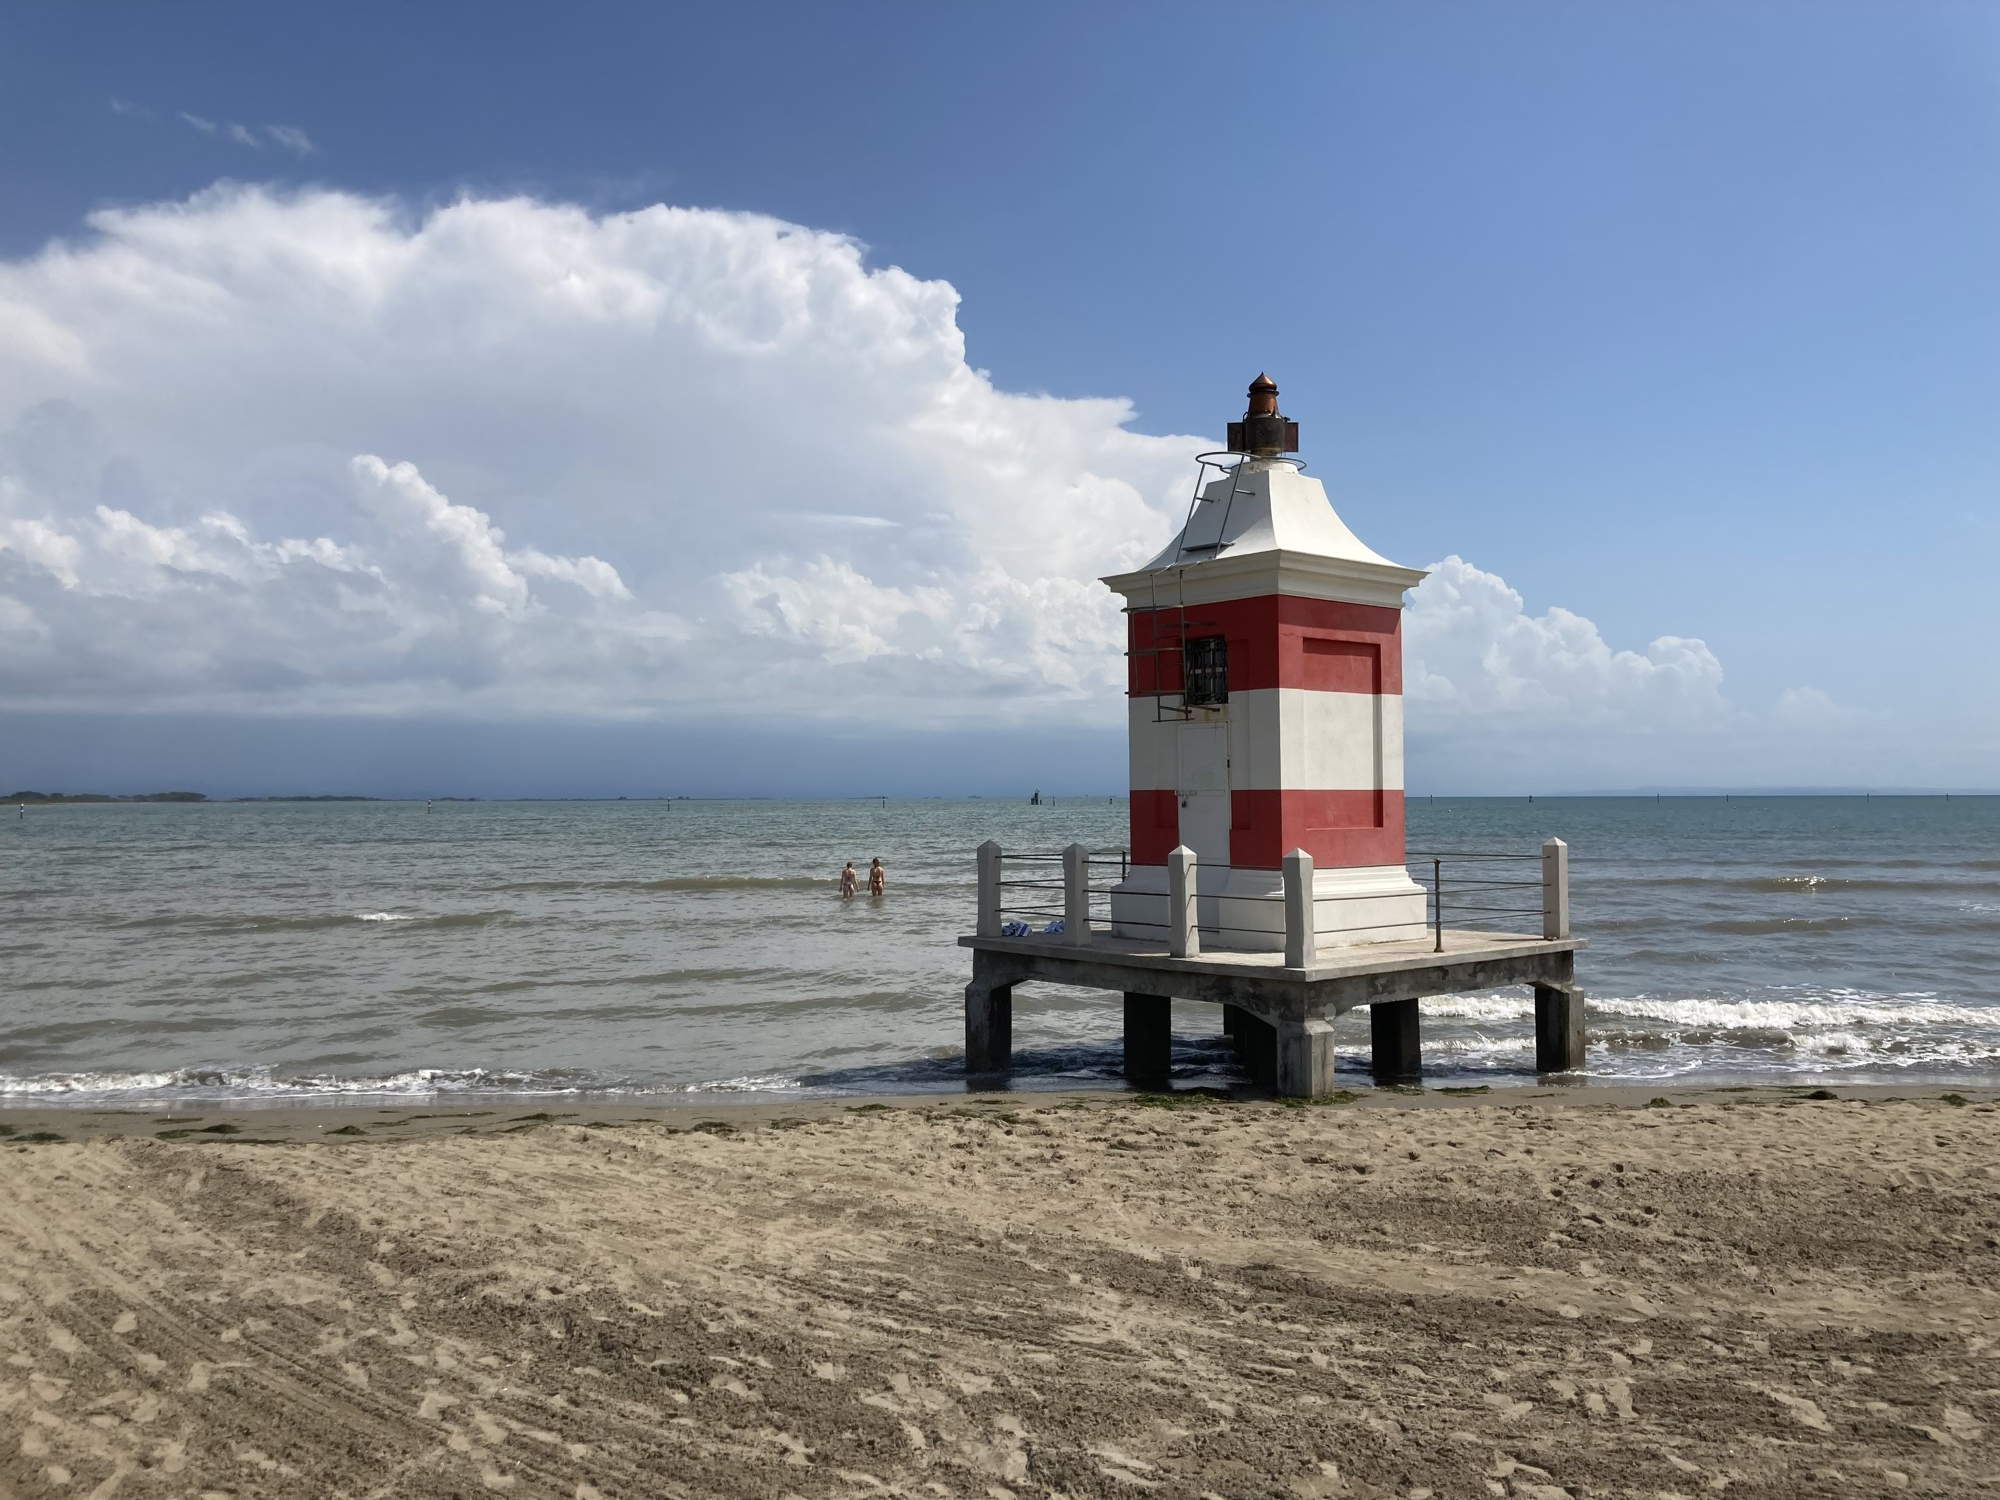 kleiner Leuchtturm am Strand von Lignano, waagrecht rot-weiß gestreift, auf Pfeilern im niedrigen Wasser in den Wellen stehend